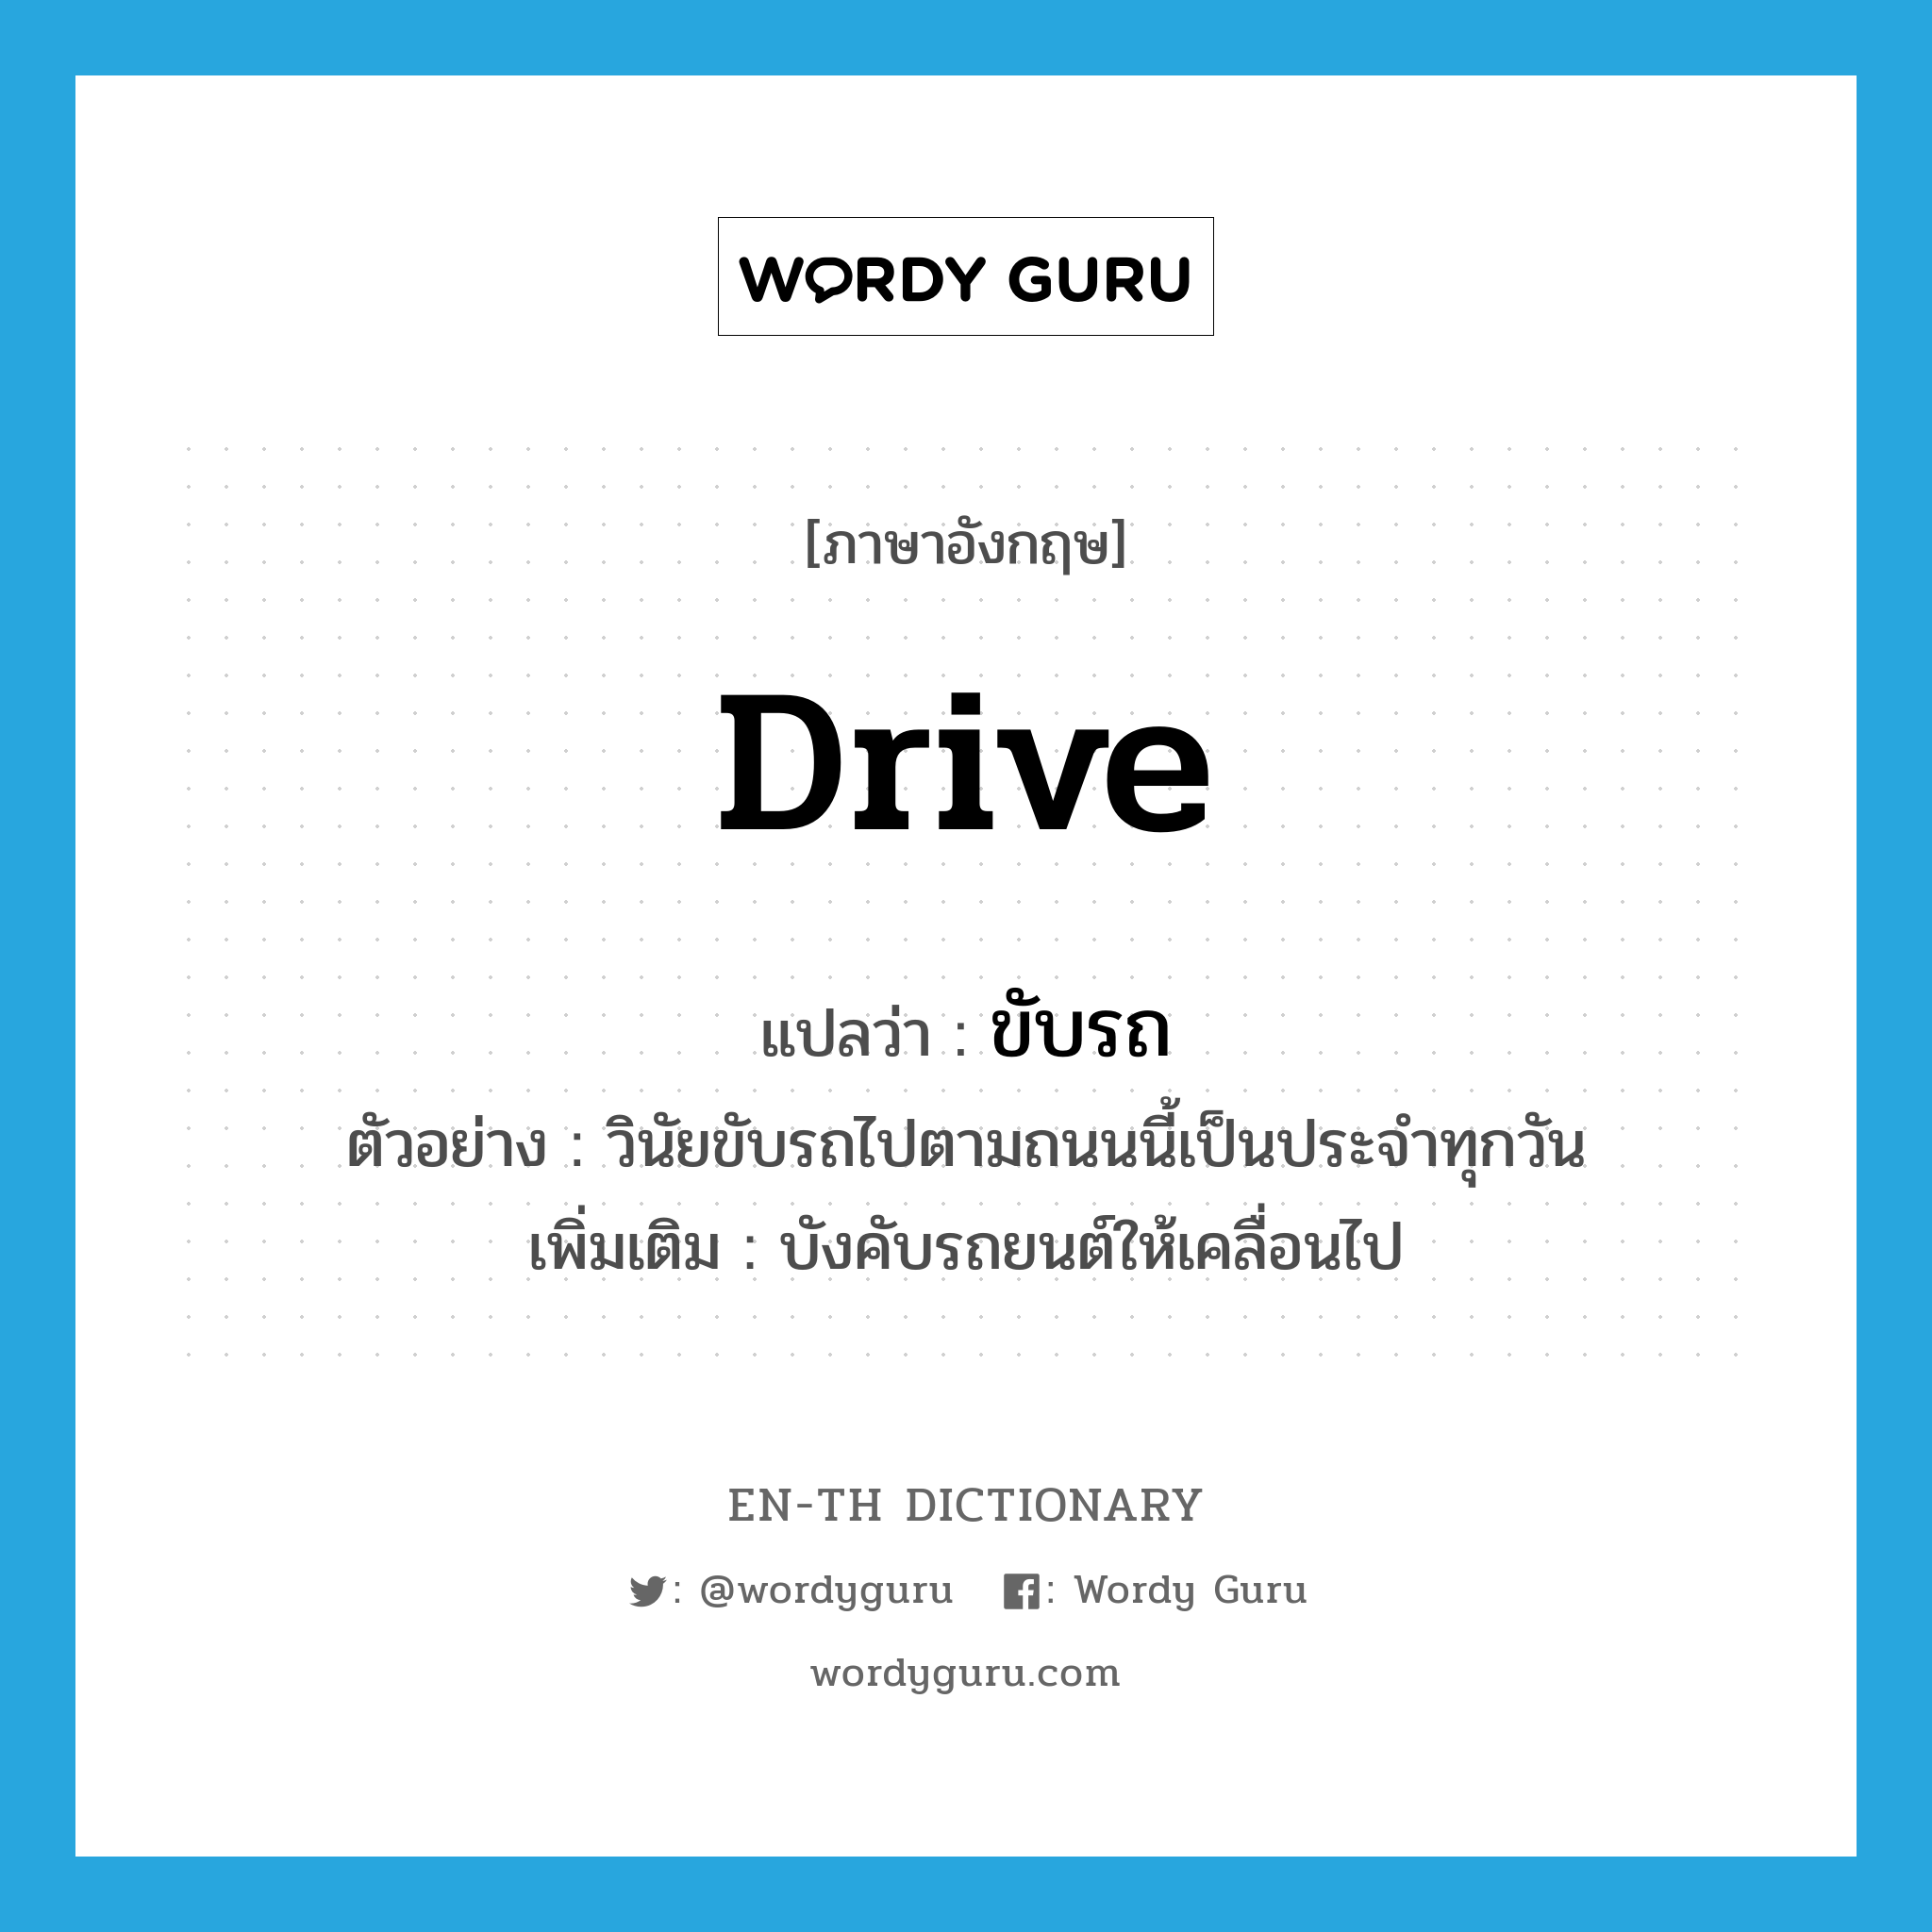 drive แปลว่า?, คำศัพท์ภาษาอังกฤษ drive แปลว่า ขับรถ ประเภท V ตัวอย่าง วินัยขับรถไปตามถนนนี้เป็นประจำทุกวัน เพิ่มเติม บังคับรถยนต์ให้เคลื่อนไป หมวด V